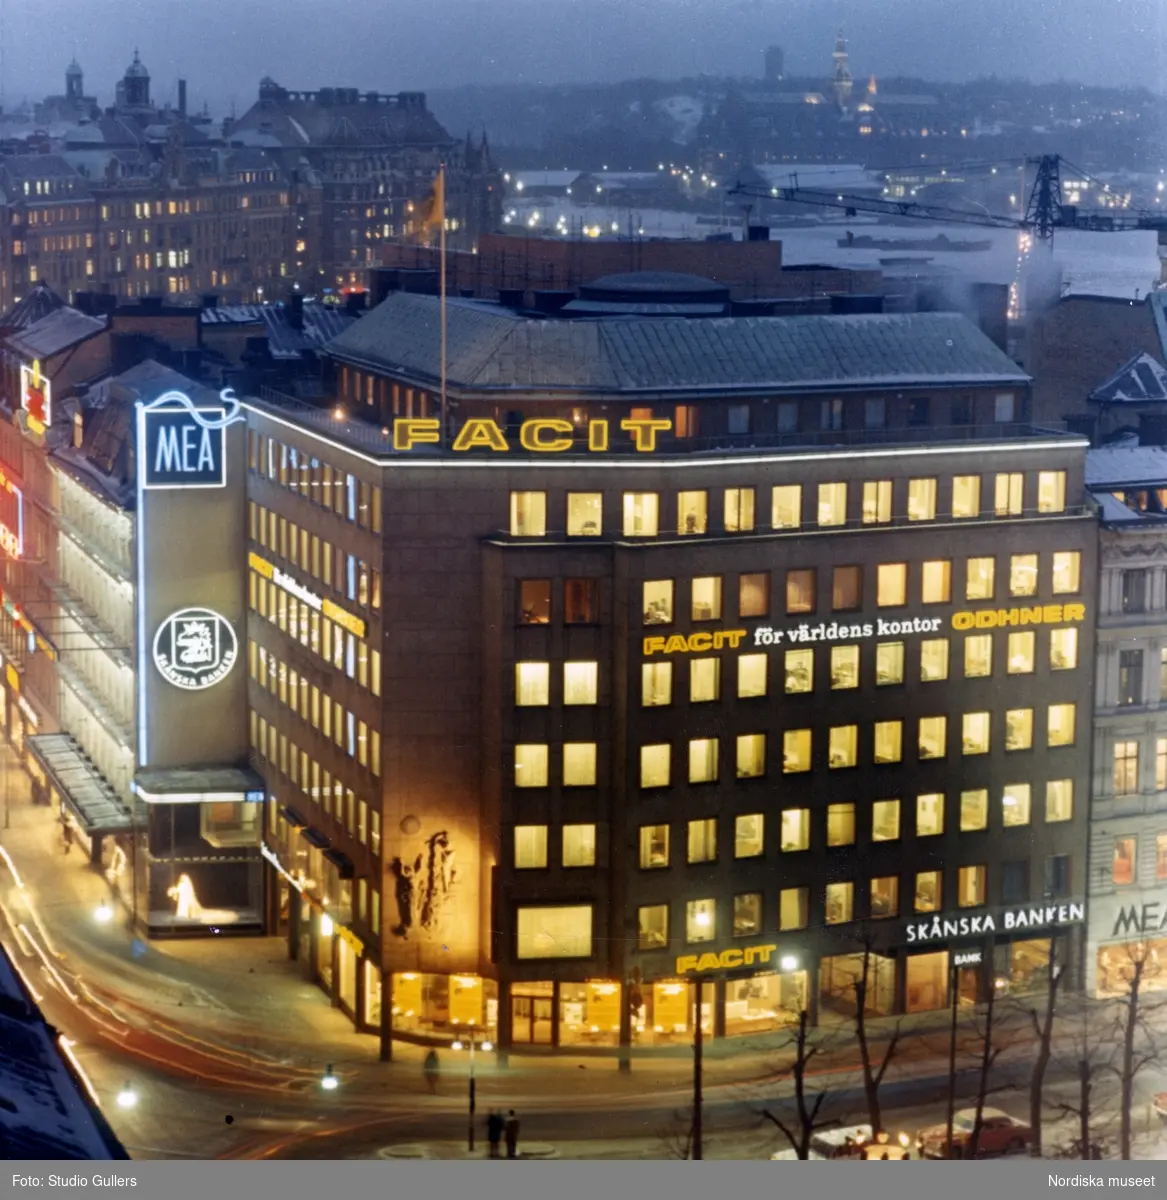 Stockholm. Kvällsvy över husen i hörnet Kungsträdgårdsgatan och Hamngatan, bland annat Åtvidabergshuset. På fasaden ljusskyltar för MEA, Facit och Skånska Banken. Vänstertrafik.